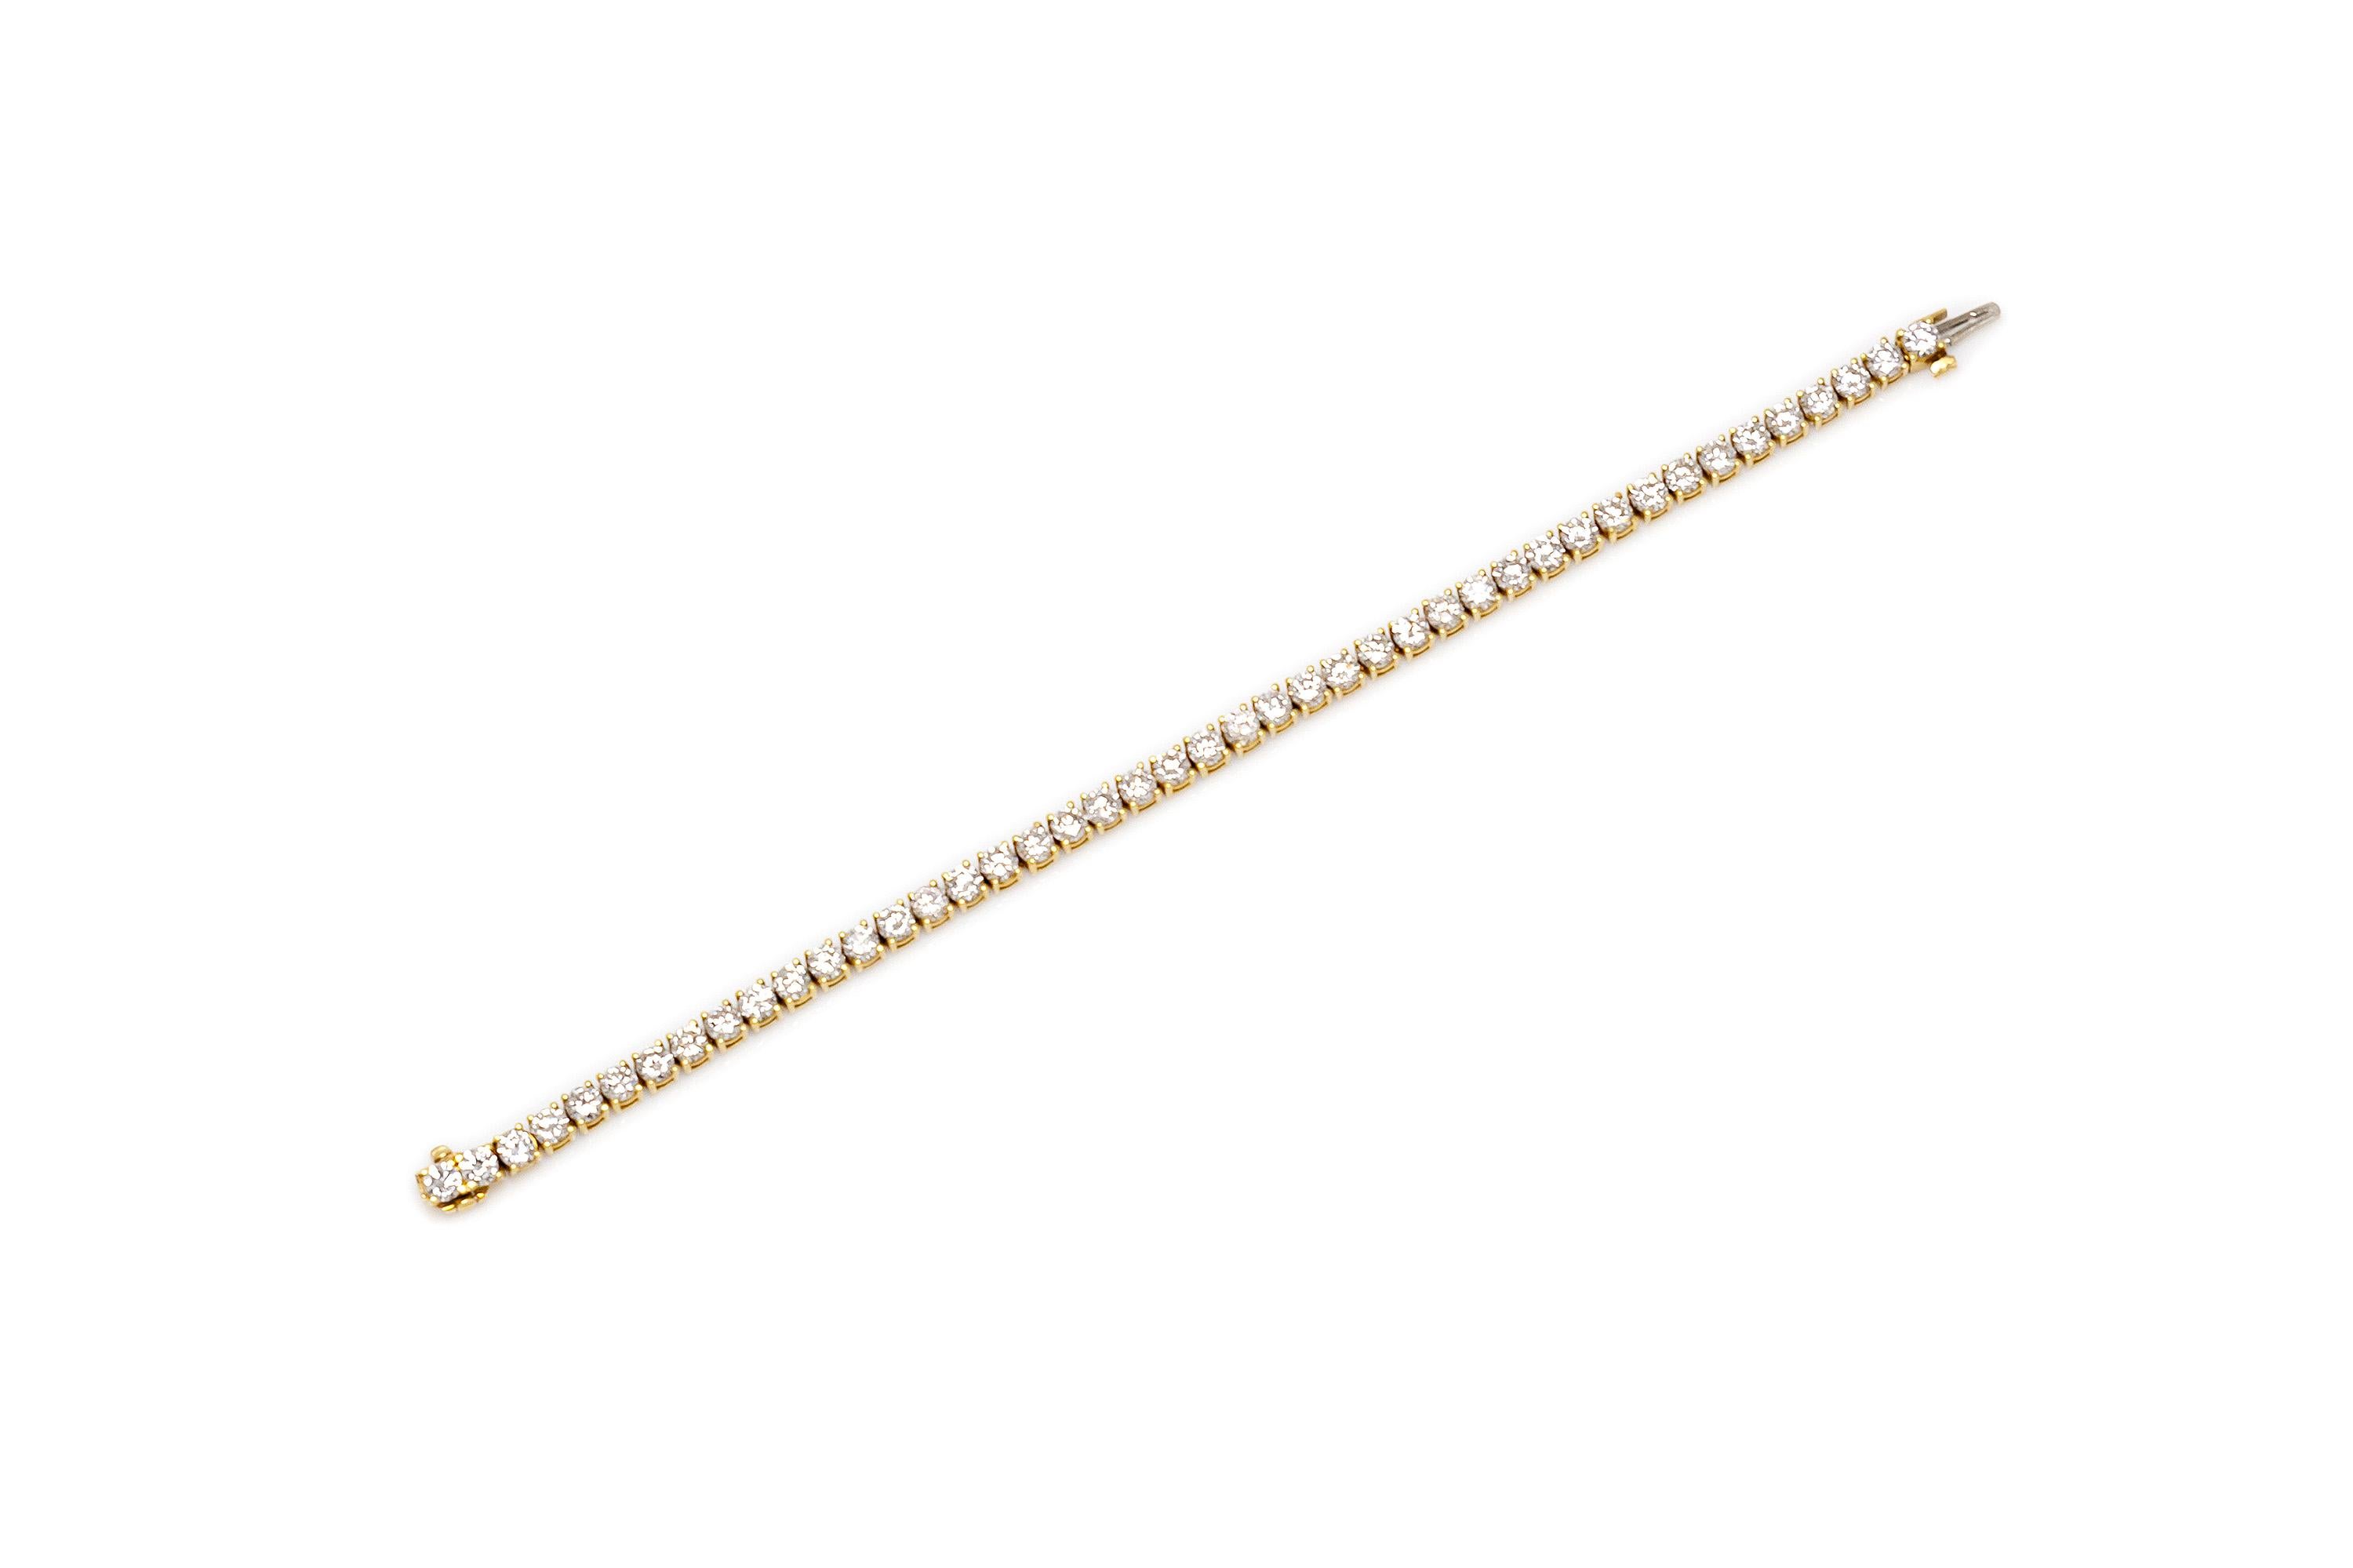 Bracelet tennis finement ouvragé en or jaune 18k avec des diamants (E-F/VS) pesant un total de 9.00 carats. Vers les années 70.